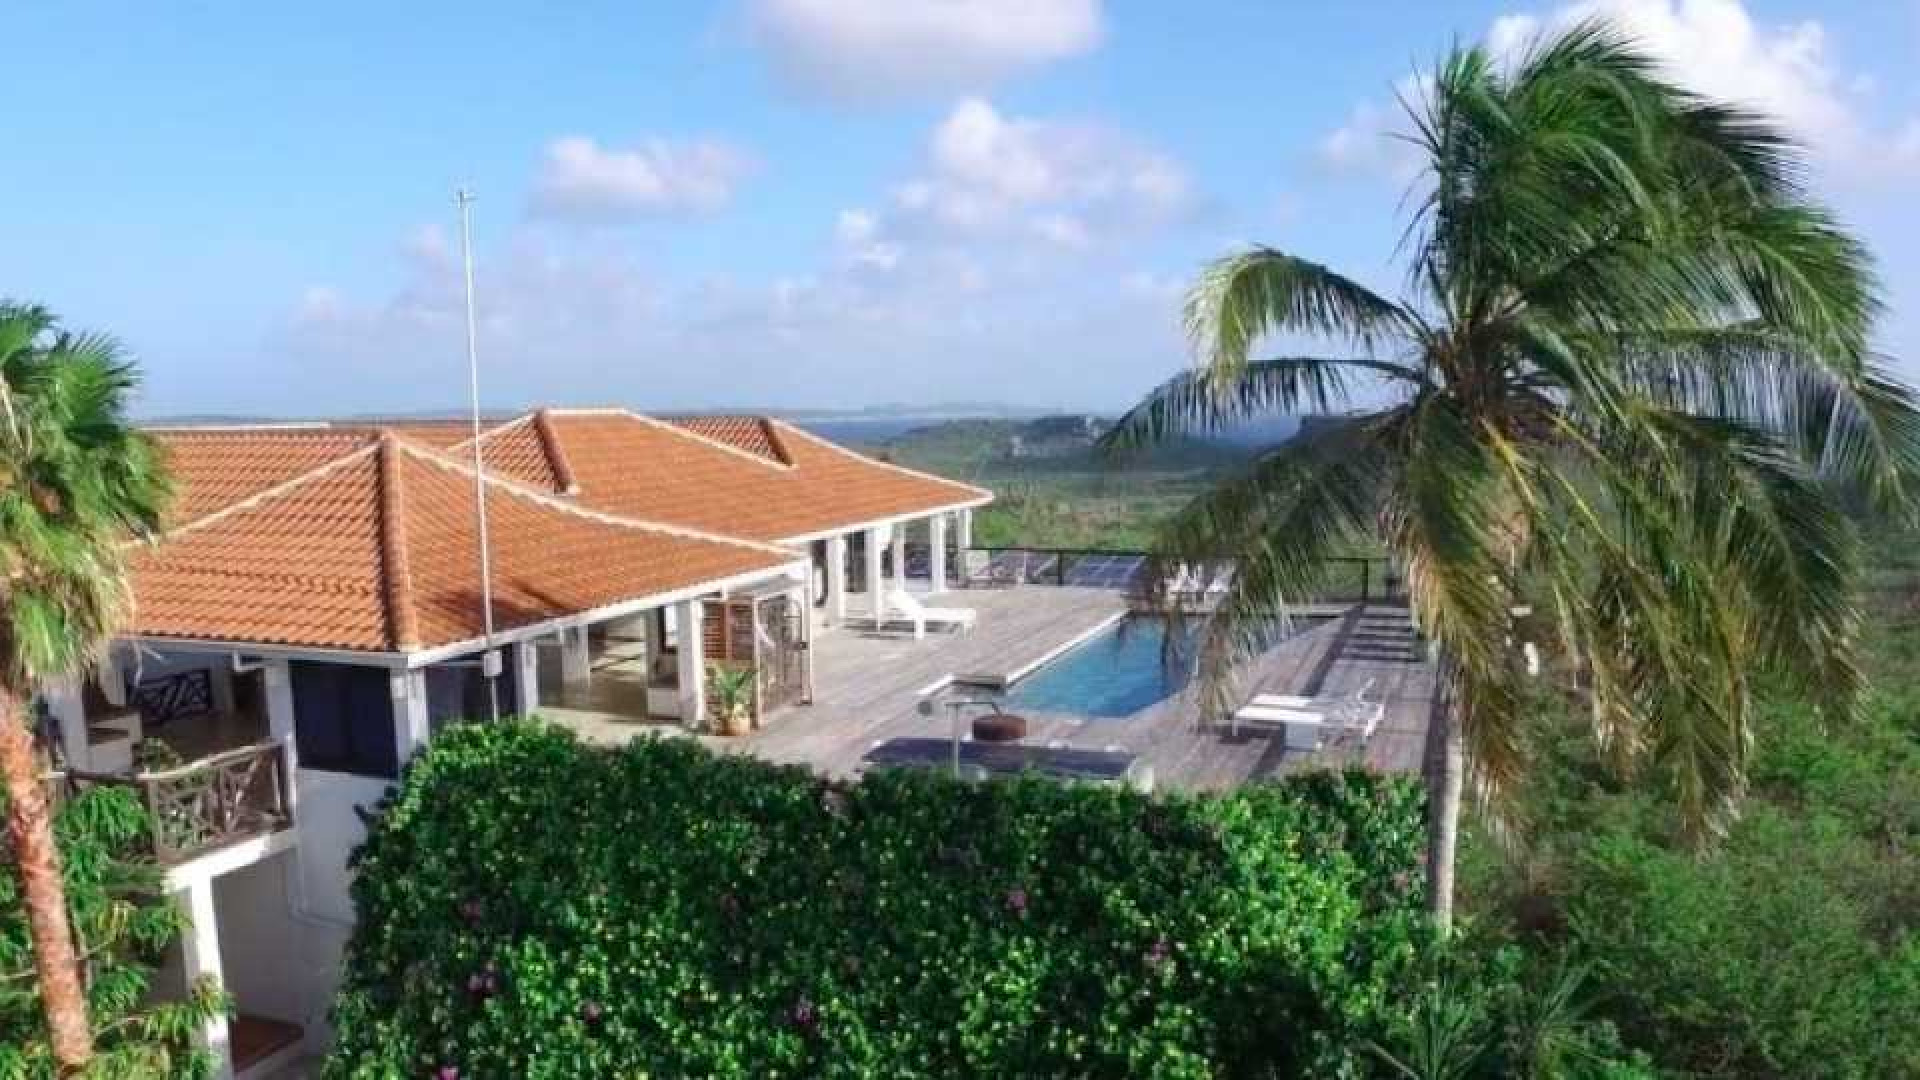 Barry Hay zet zijn miljoenenvilla op Curacao te koop. Zie foto's